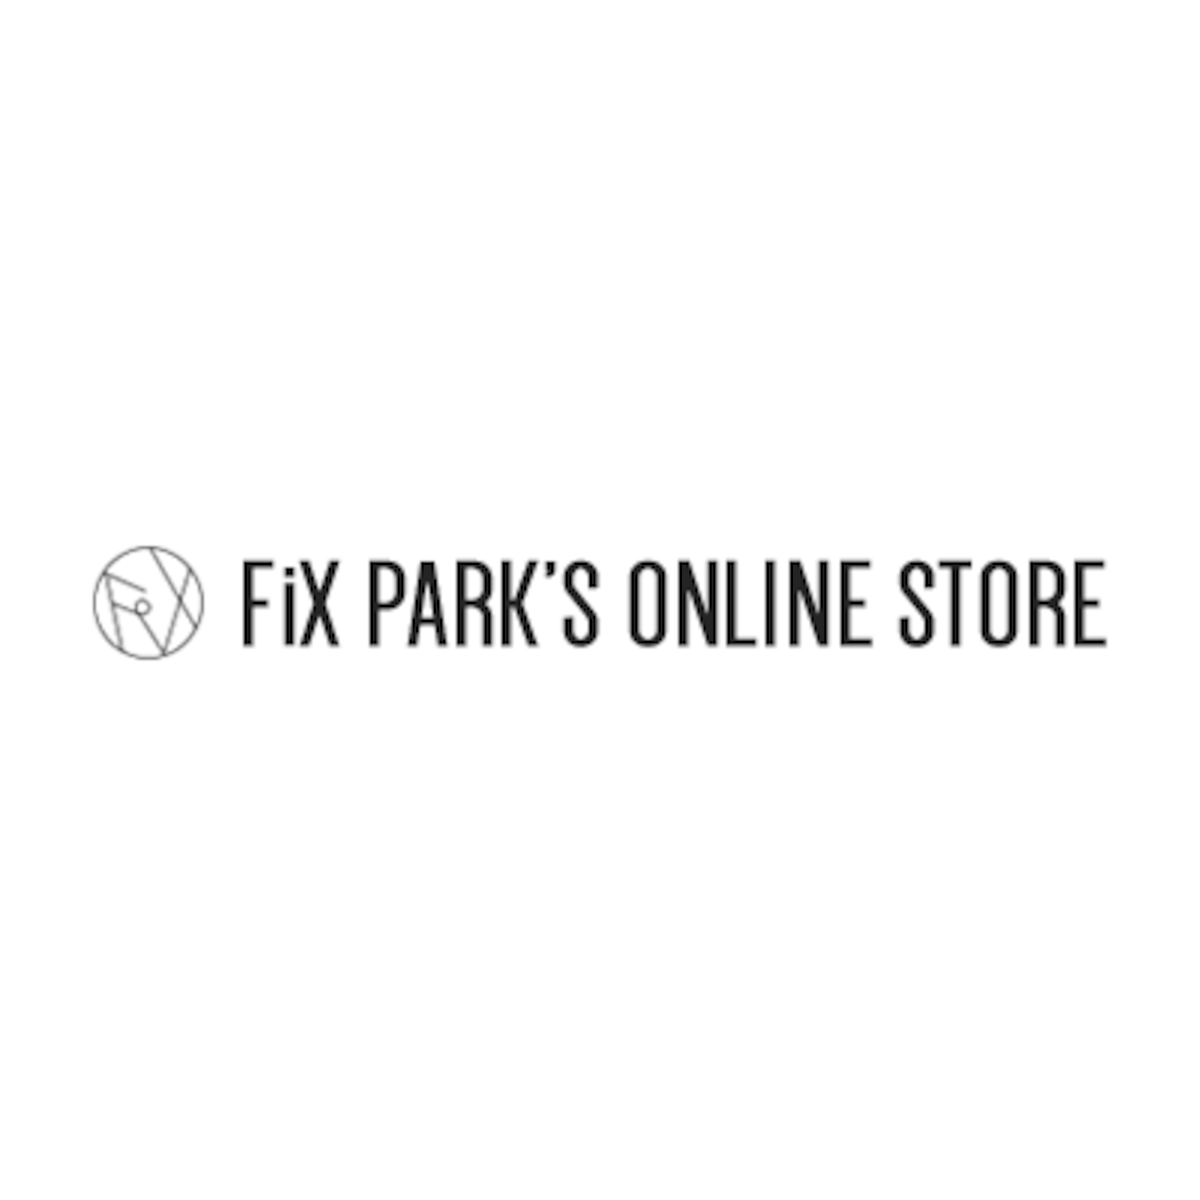 FiX PARK'S ONLINE STORE